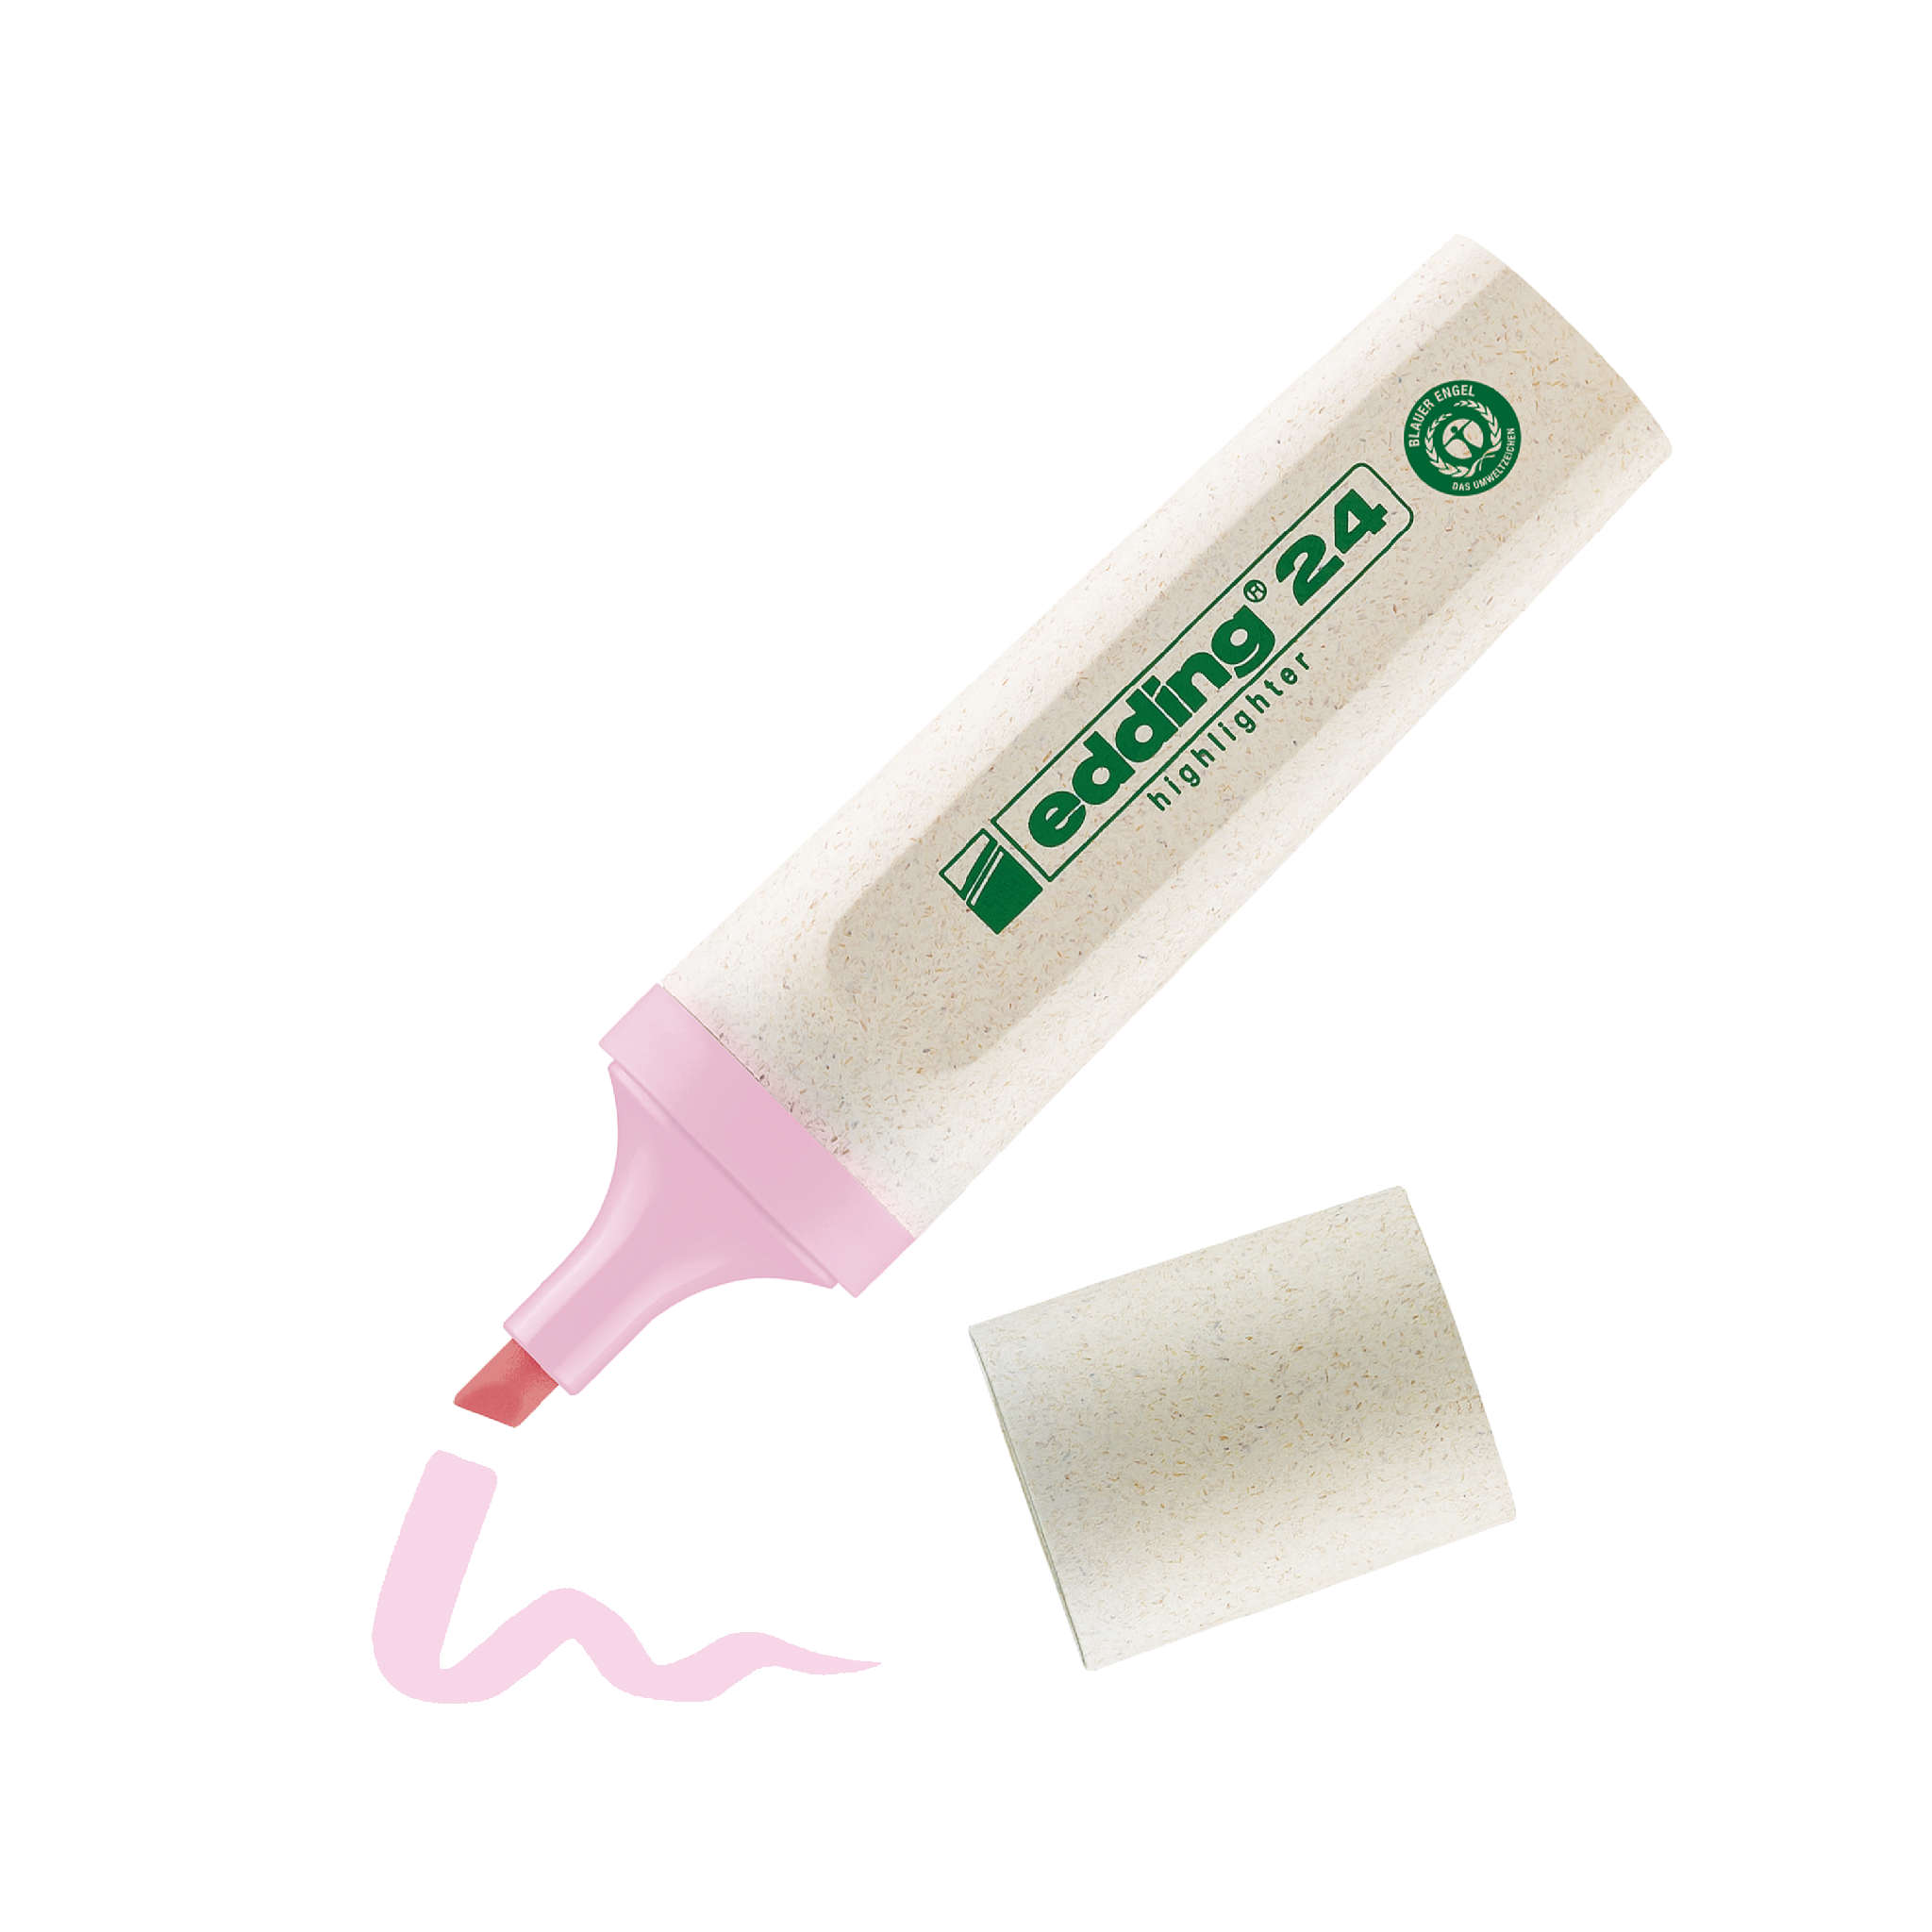 Eine Tube edding 24 EcoLine Textmarker-Creme mit einem Tupfer des Produkts neben einem Kosmetikschwamm ausdrücken.